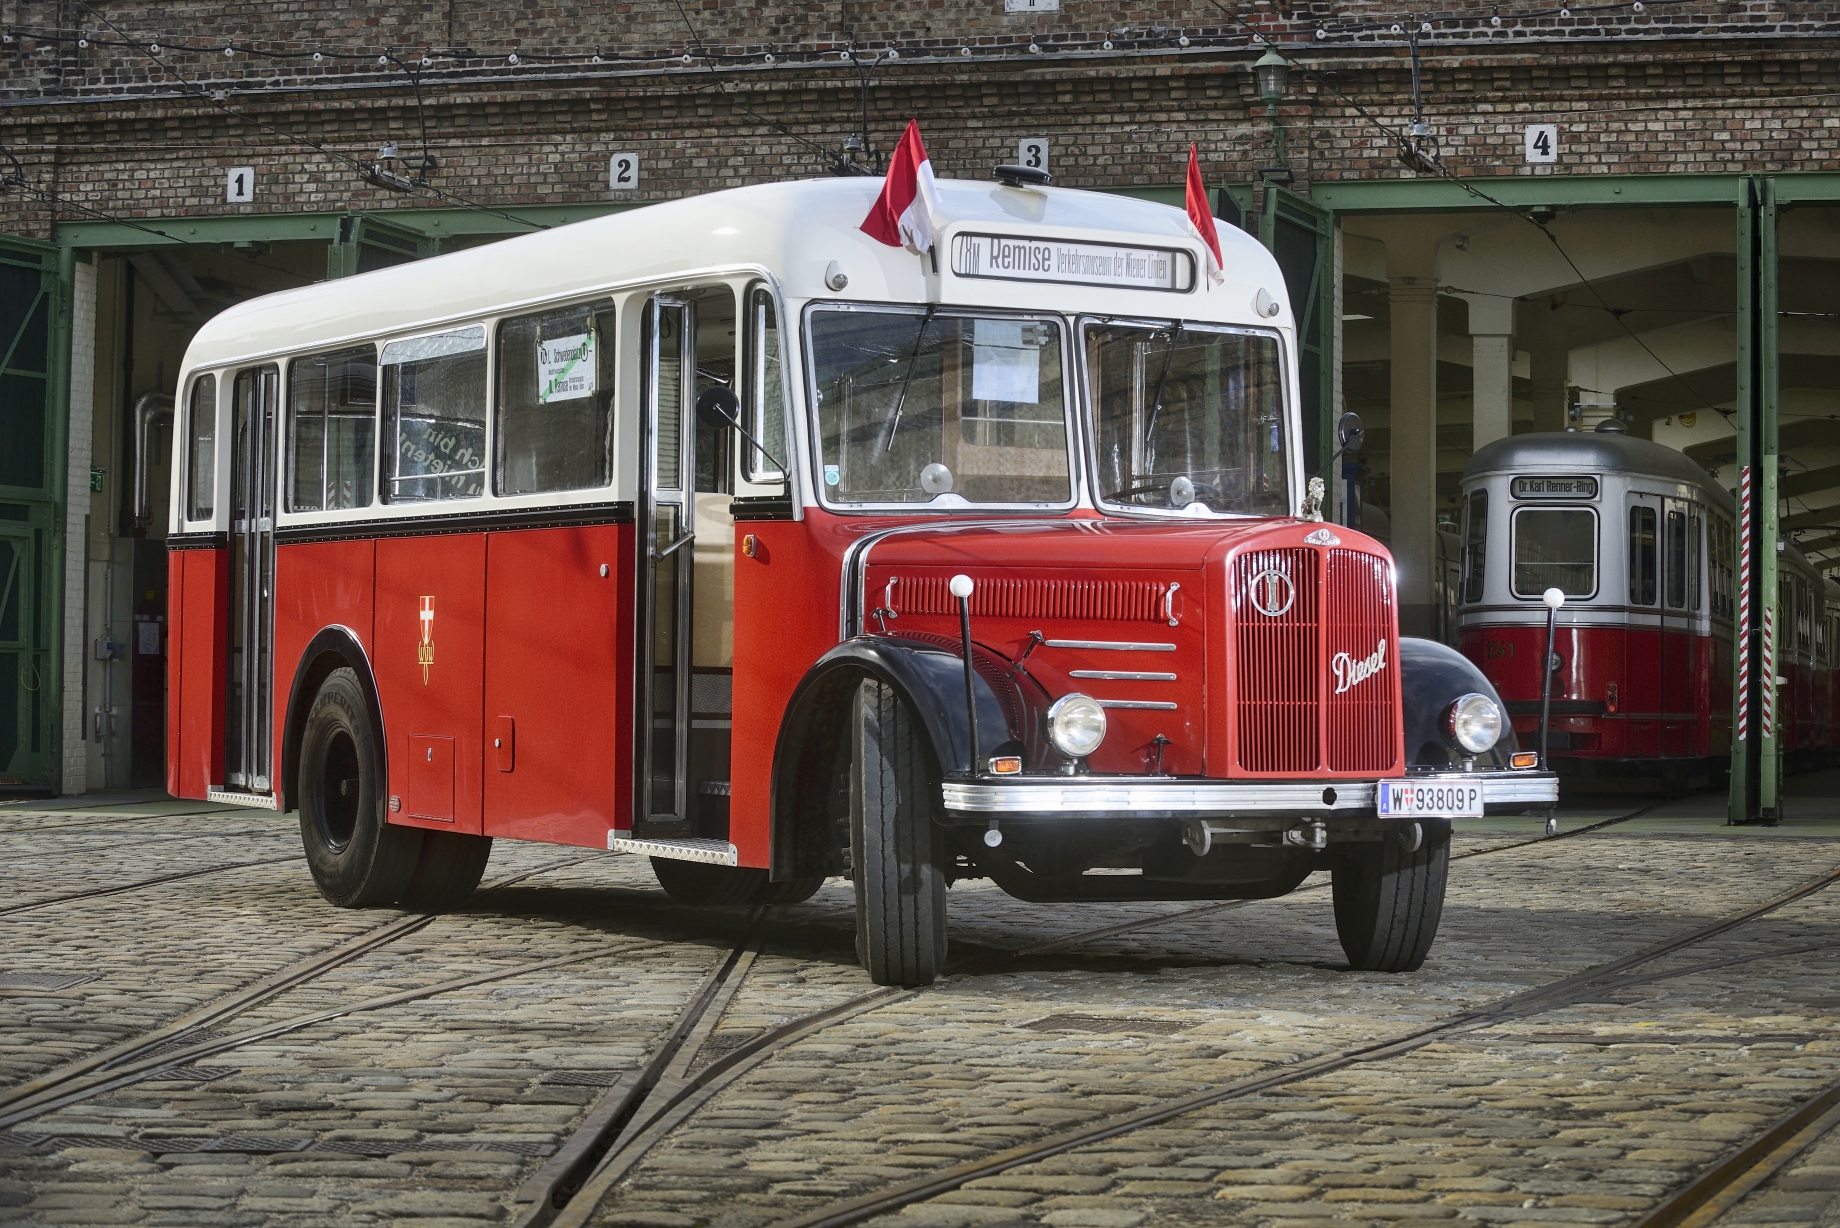 Ab 15. März 2015 verkehrt an den Wochenenden ein Oldtimer-Shuttlebus zwischen Schwedenplatz und dem Verkehrsmuseum Remise in Erdberg.